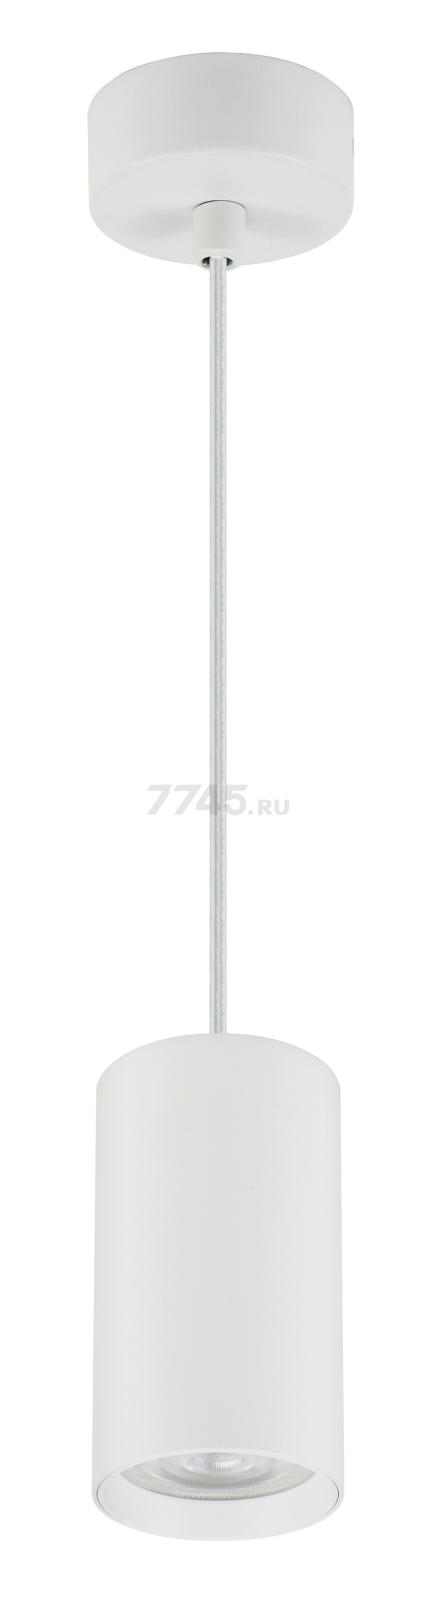 Cветильник подвесной 35Вт TRUENERGY Modern белый (21320)